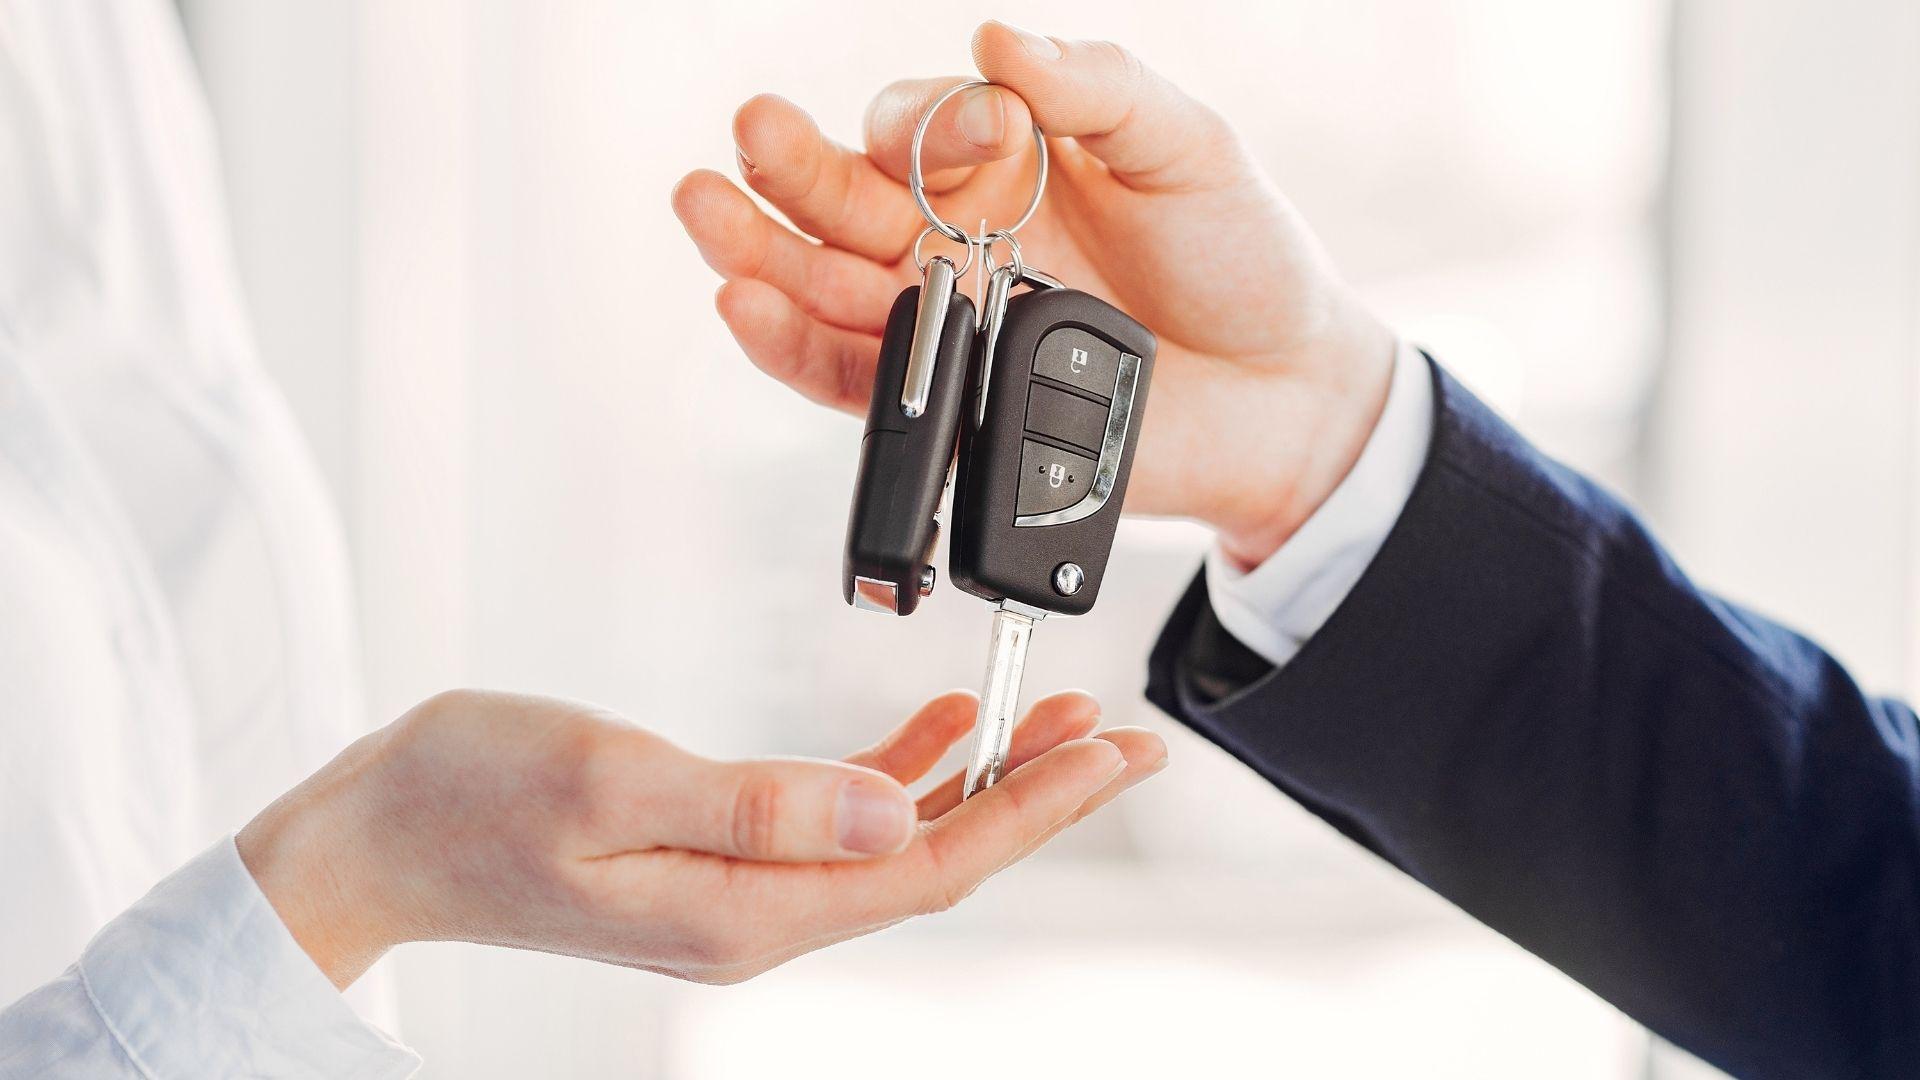 De sleutels van een Toyota worden overhandigd aan de nieuwe koper van een tweedehandswagen bij Vernaillen in Ninove